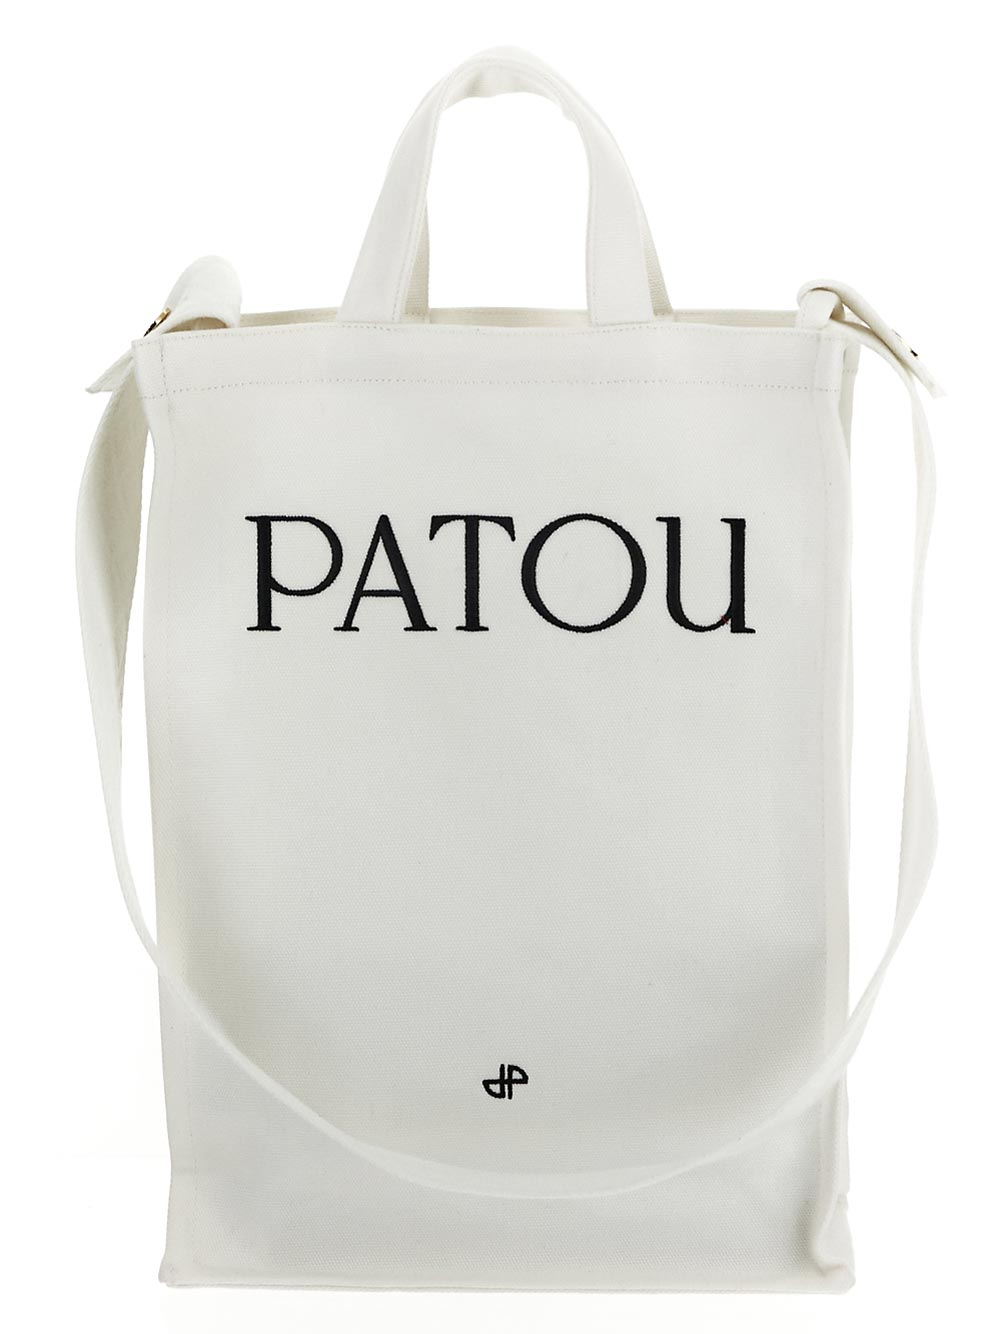 Patou PATOU Shoulder Bags White AC0620076001W